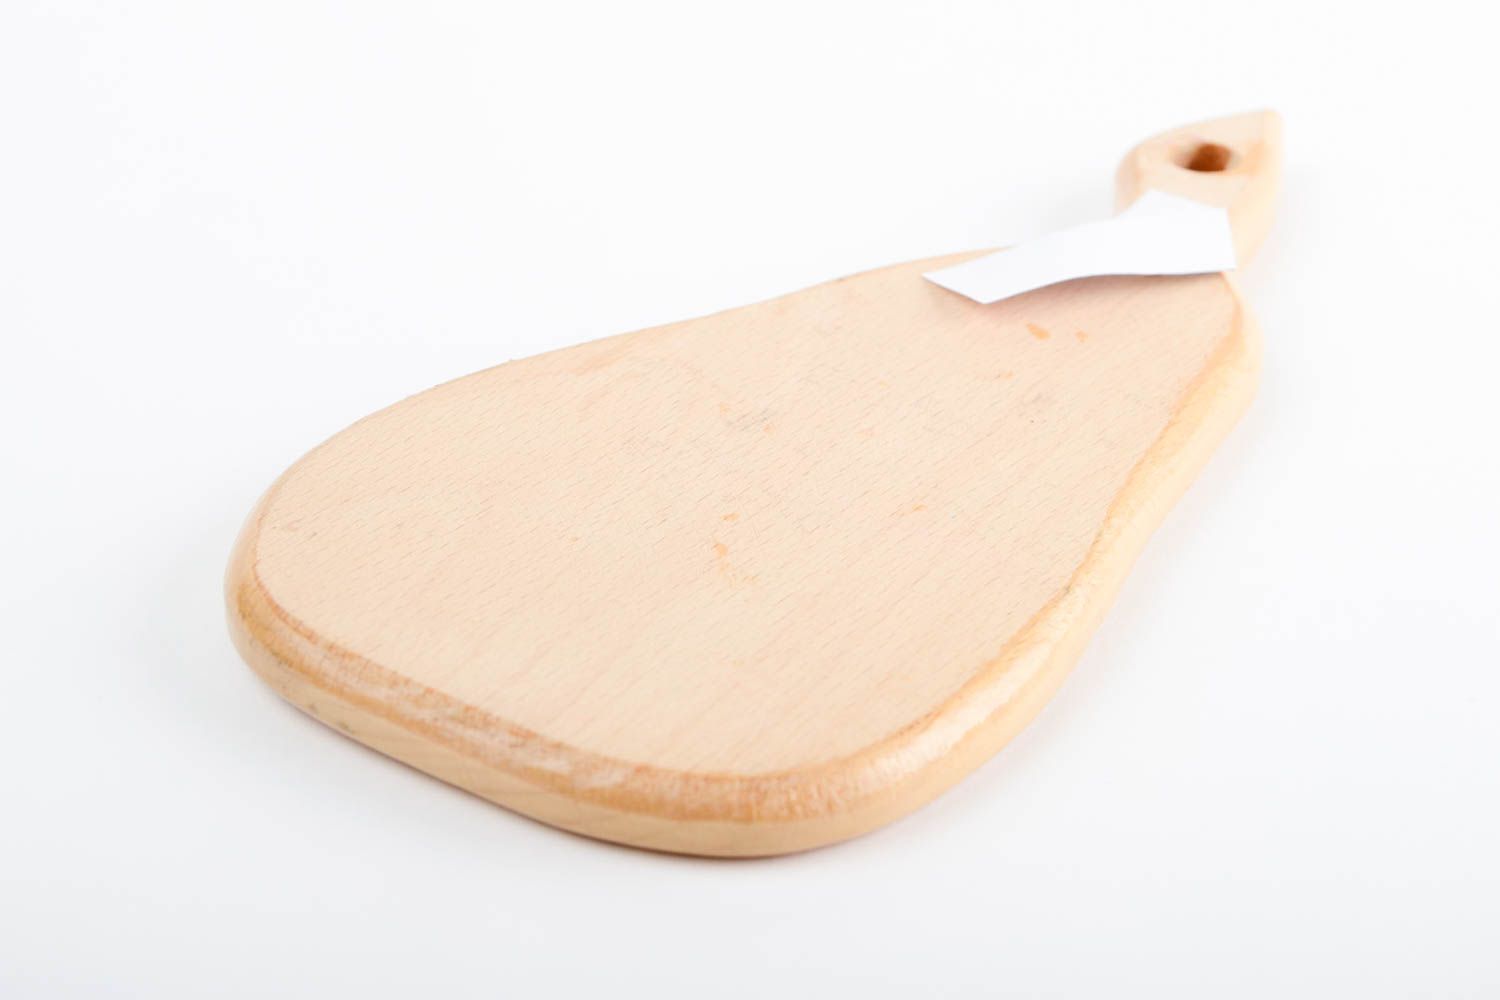 Handmade decorative cutting board wooden chopping board stylish kitchen utensil photo 5